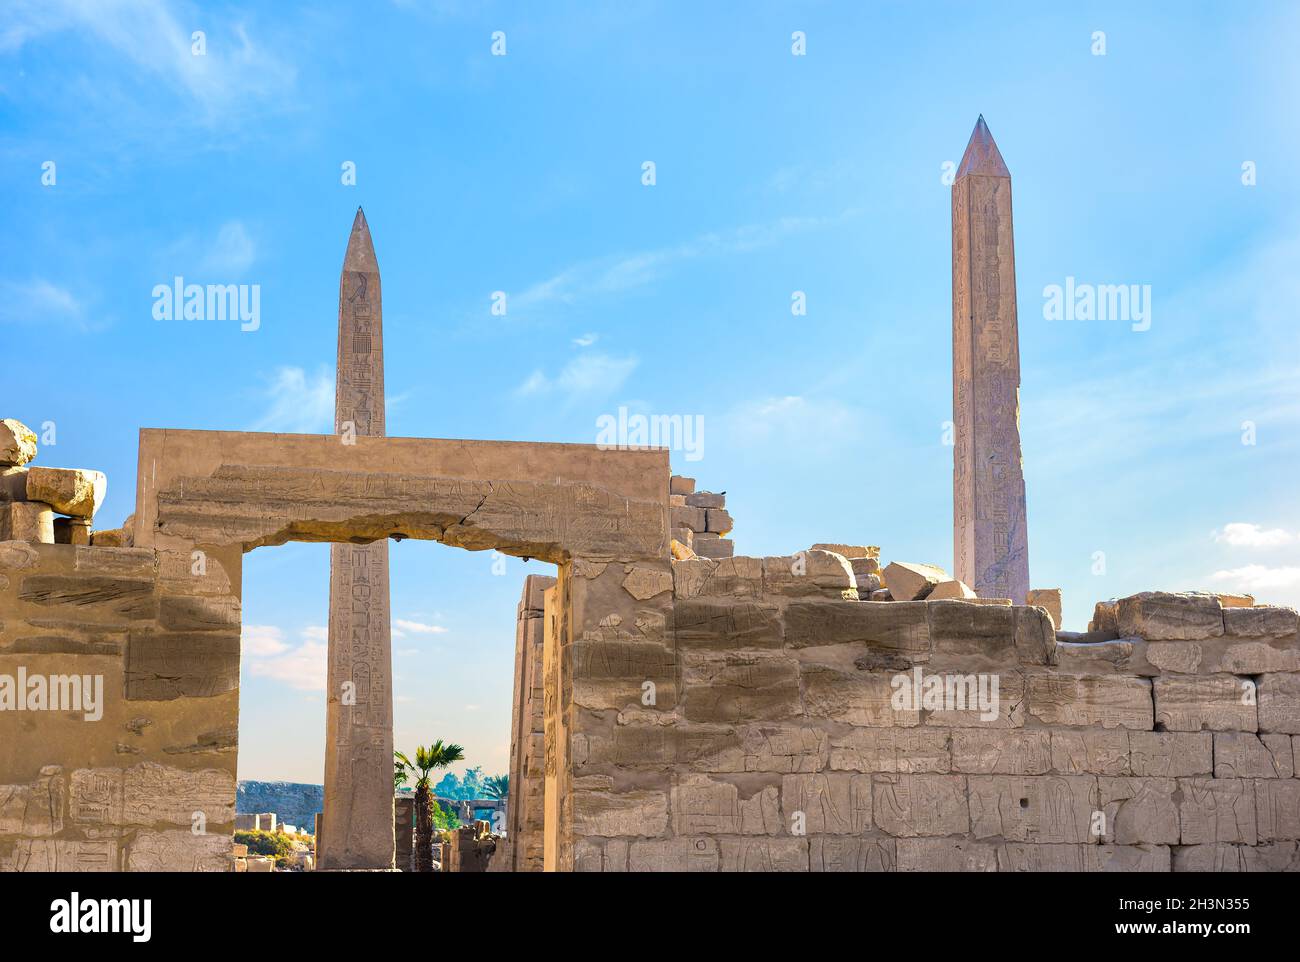 Obelisks in Karnak Temple Stock Photo